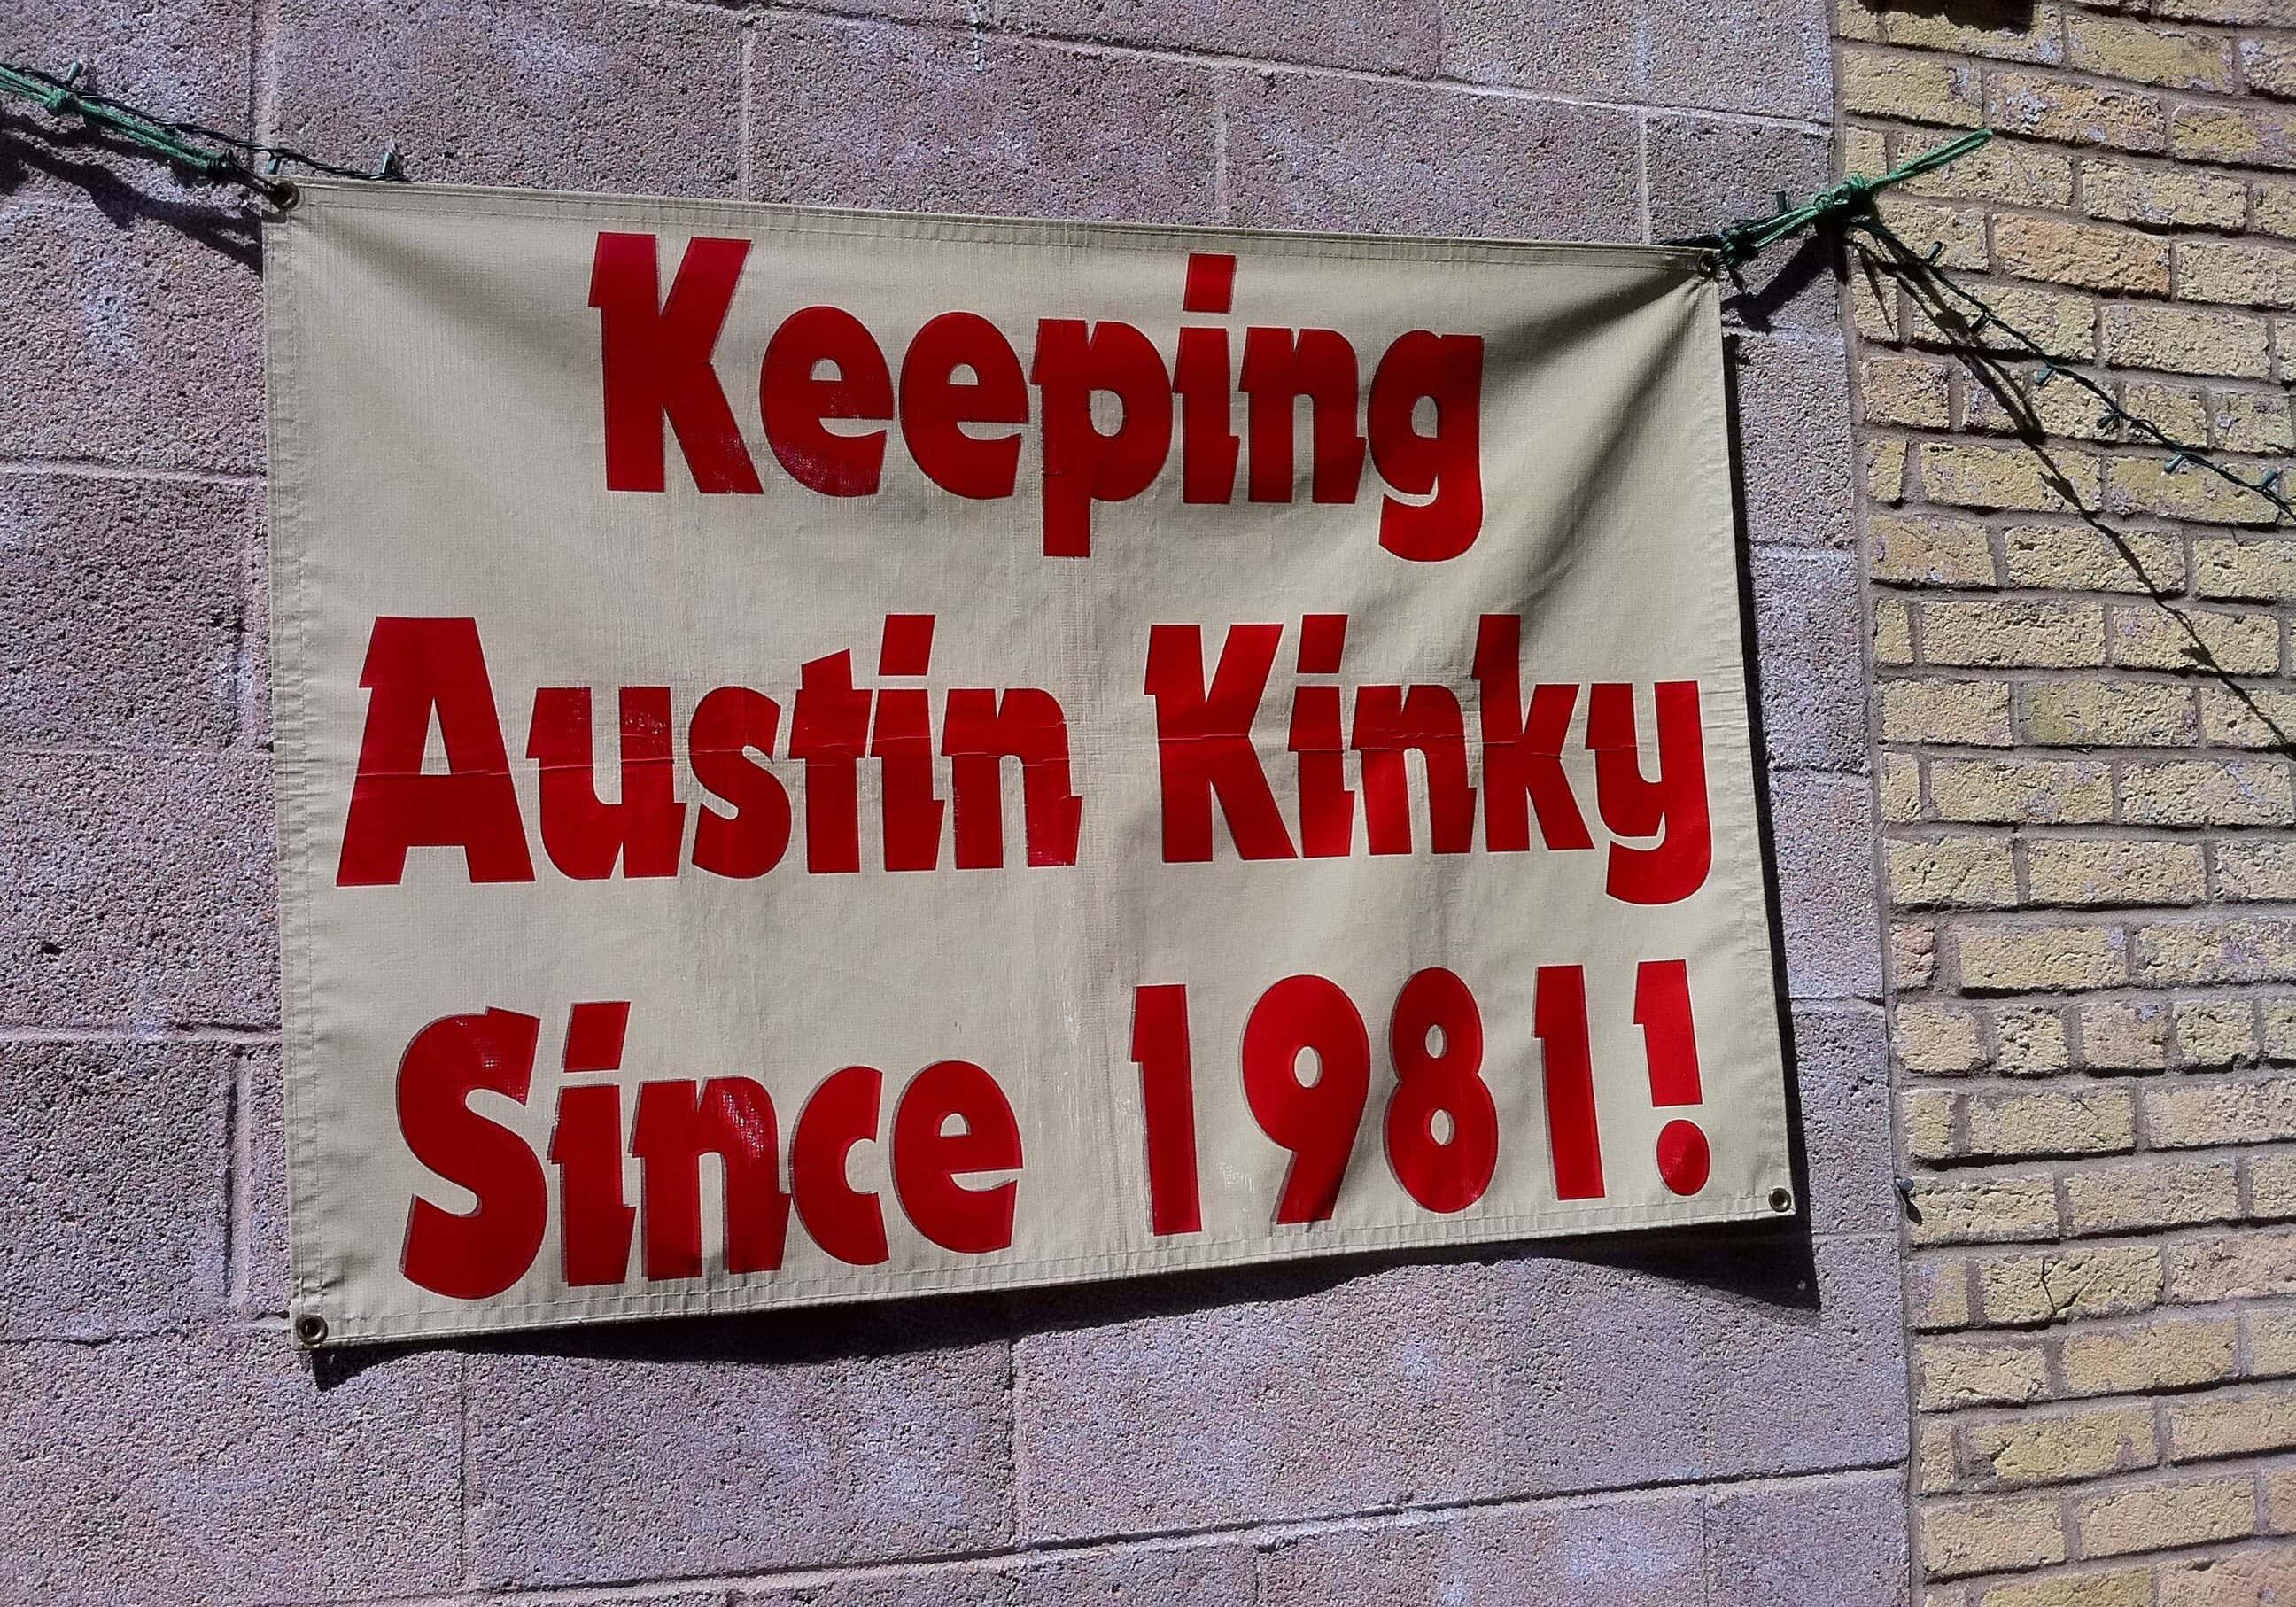 Keeping Austin Kinky by Raúl Colón